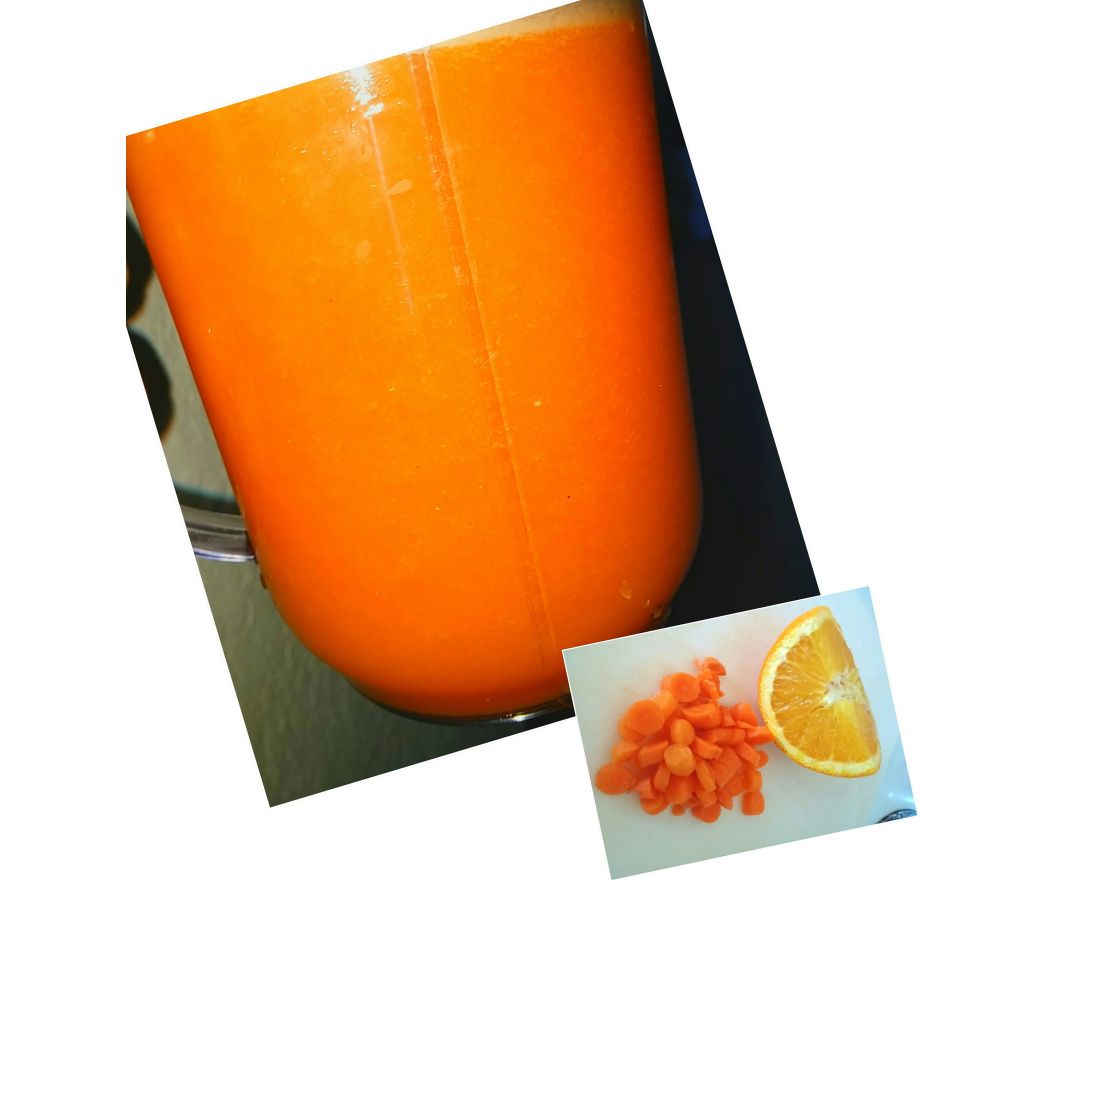 Carrot Orange juice